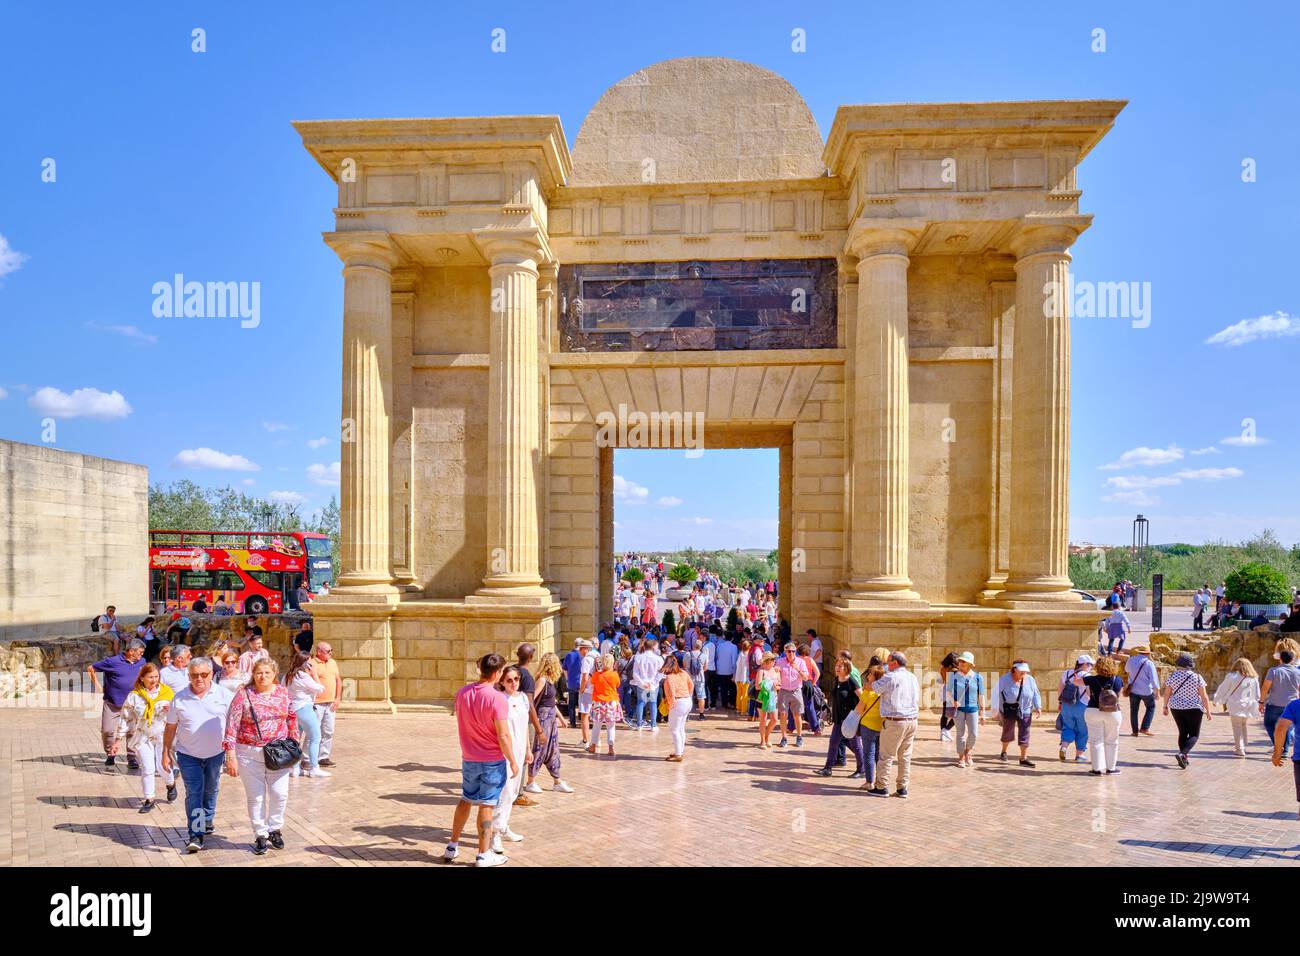 Puerta del Puente mit Zugang zur römischen Brücke von Cordoba, einem UNESCO-Weltkulturerbe. Andalusien, Spanien Stockfoto